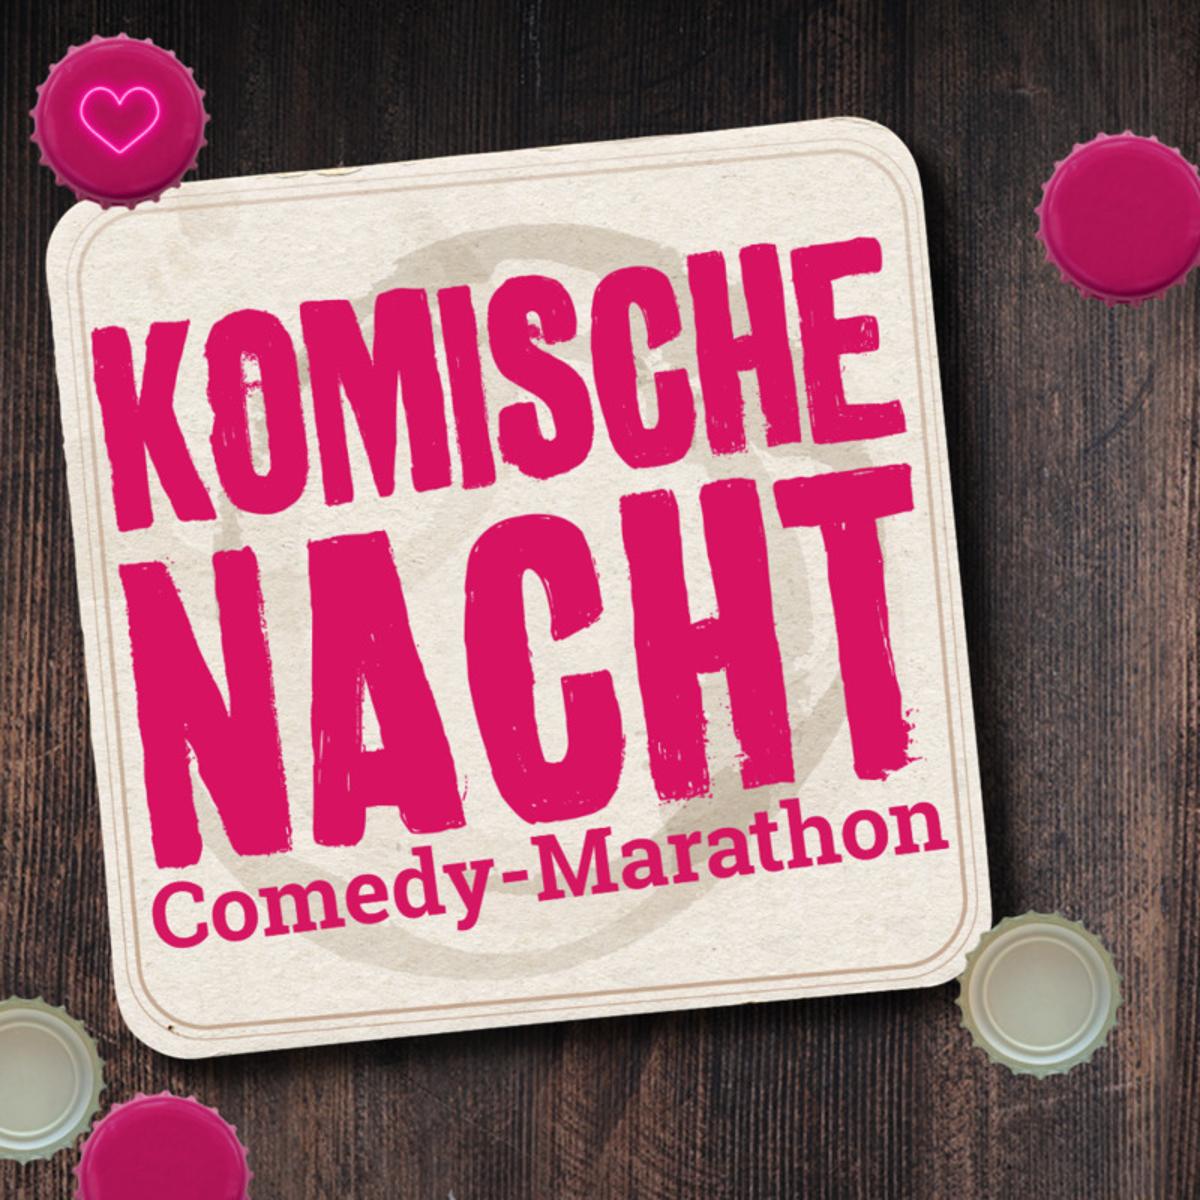 Die Komische Nacht ist eines der erfolgreichsten Live-Comedy-Formate in Deutschland. In den sch&ouml;nsten Caf&eacute;s, Bars und Restaurants einer Stadt erleben die G&auml;ste und ihre Freunde und Familie bei dieser beispiellosen Show einen ausgelassenen Abend - mit bester Unterhaltung durch ...